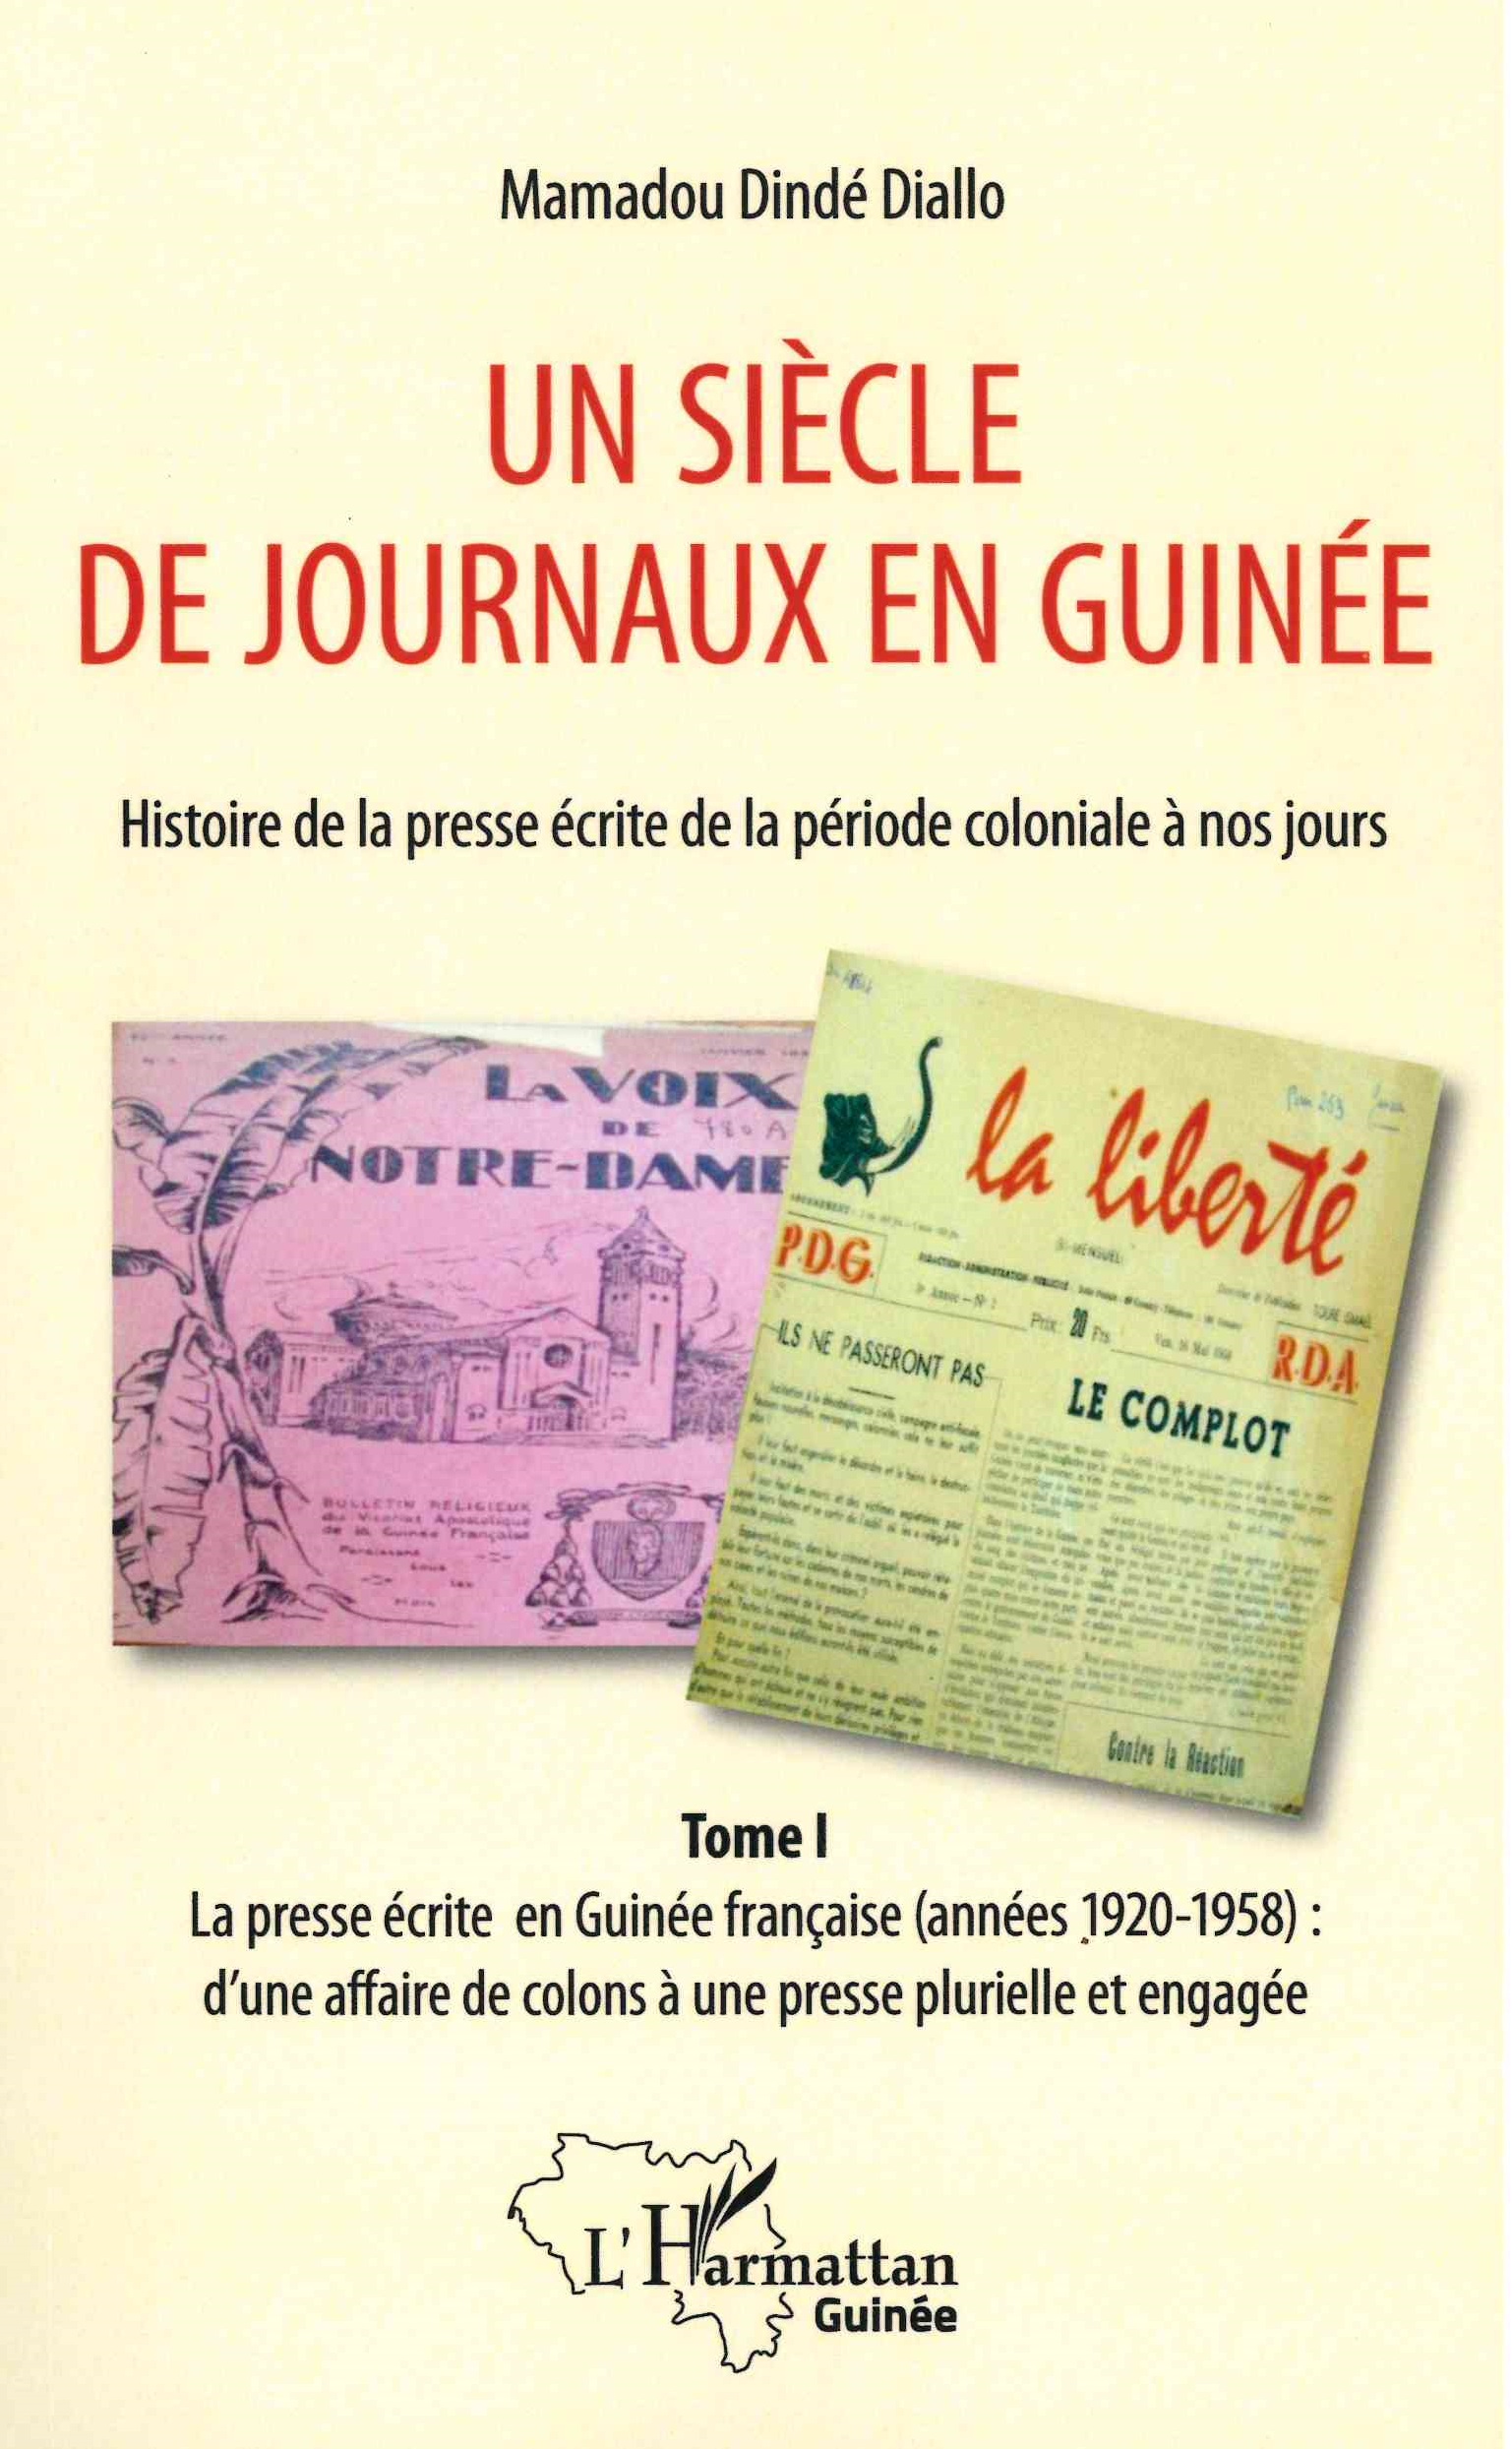 Diallo (Mamadou Dindé),  La presse écrite en Guinée française (années 1920-1958) : d'une affaire de colons à une presse plurielle et engagée